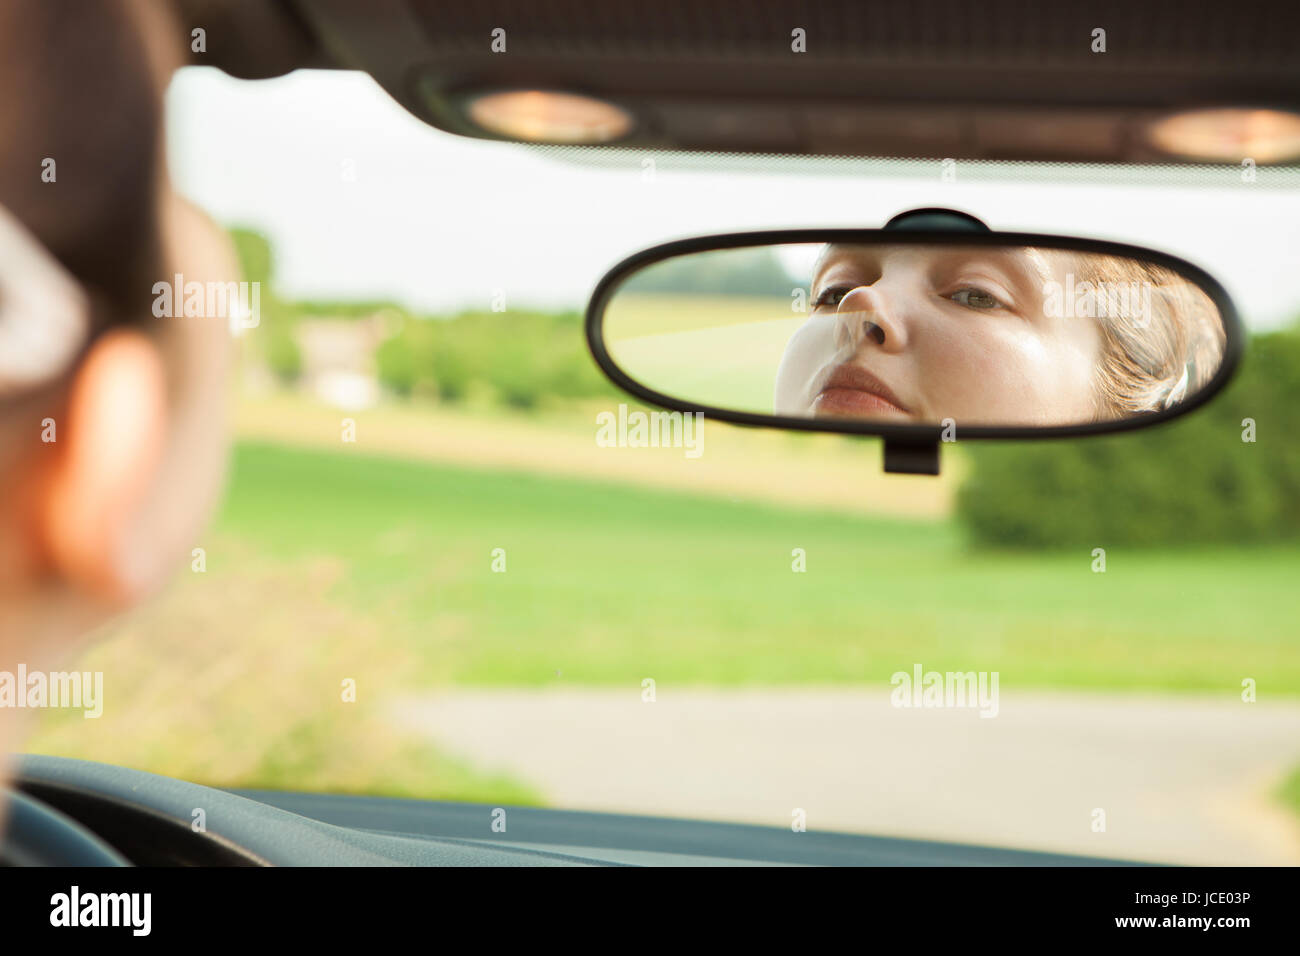 Водитель смотрит в зеркало. Глаза девушки в зеркале авто. Глаза на зеркала авто.